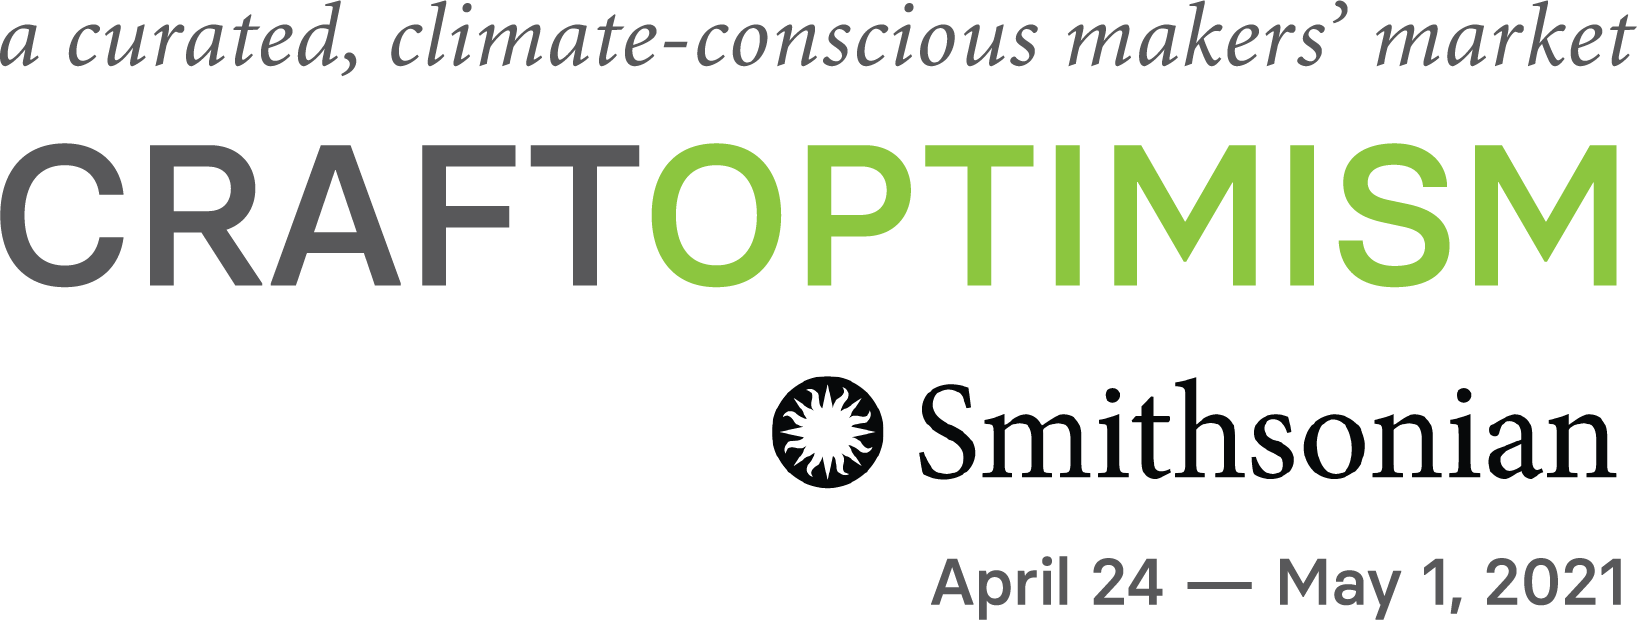 craft optimism logo